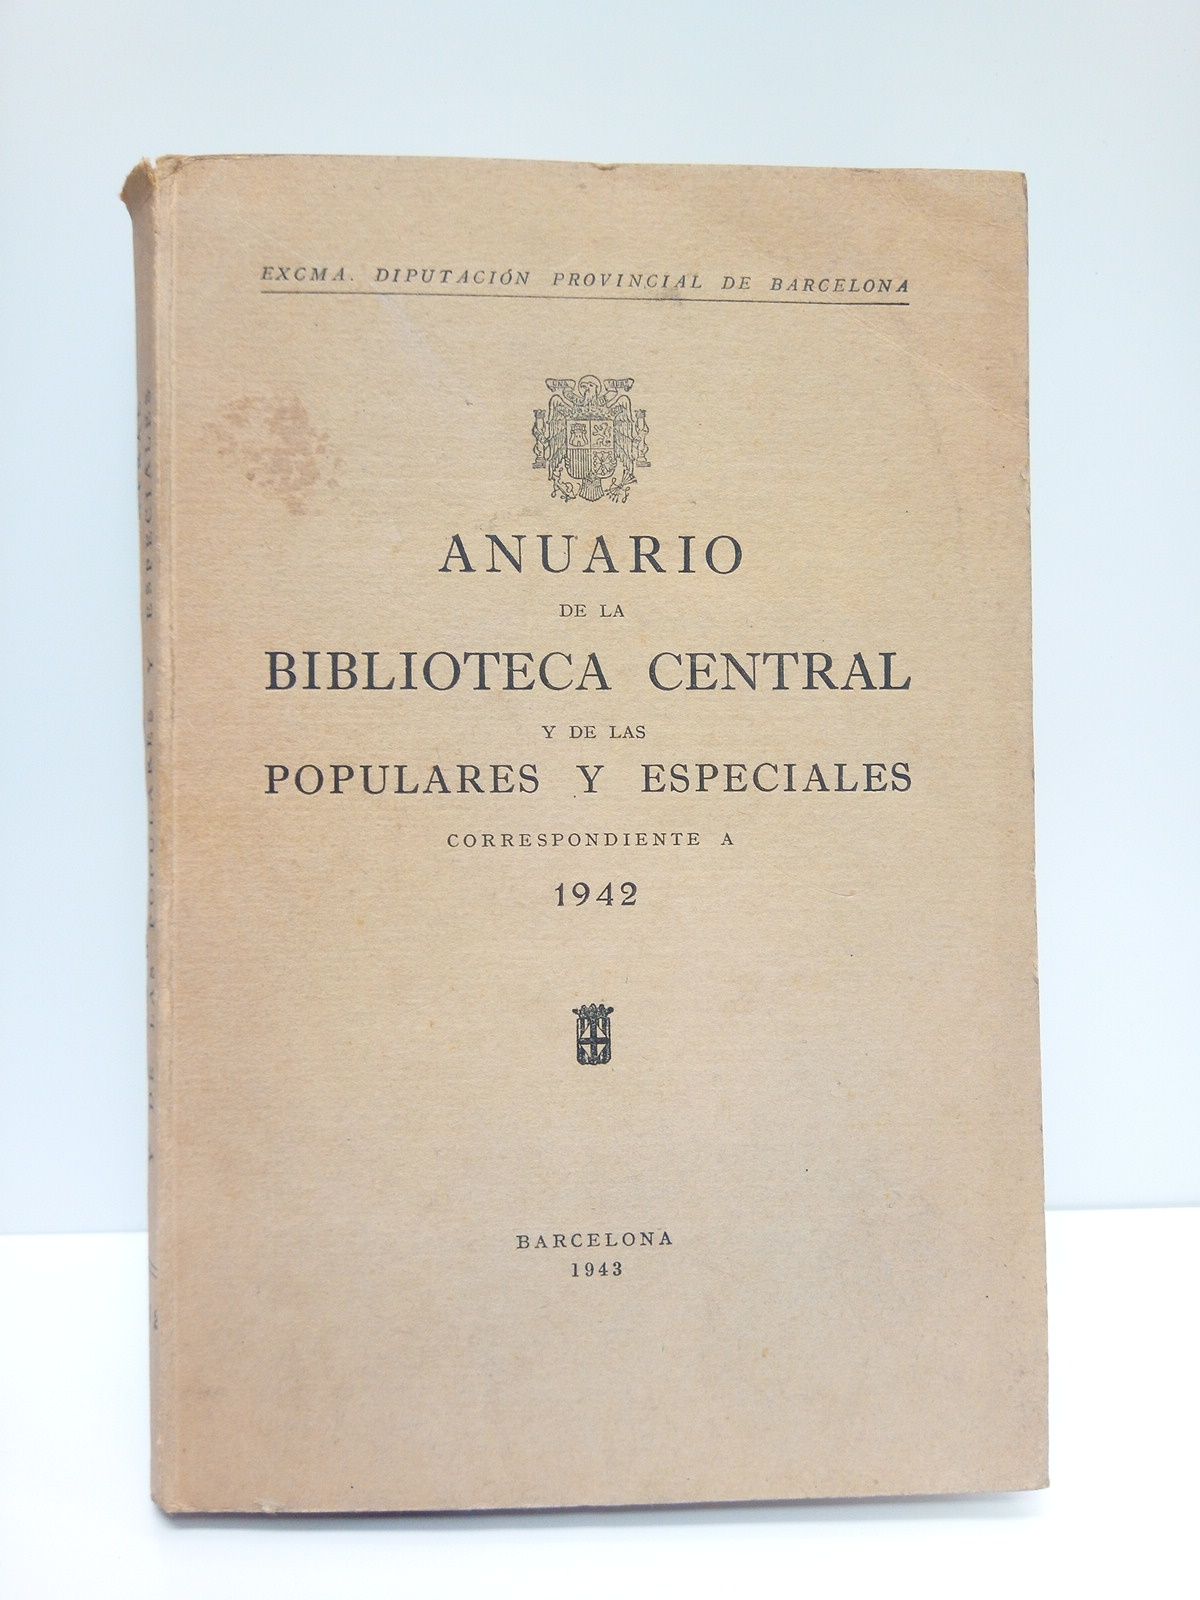 DIPUTACION PROVINCIAL DE BARCELONA - Anuario de la Biblioteca Central y de las Populares y Espaciales, correspondiente a 1942